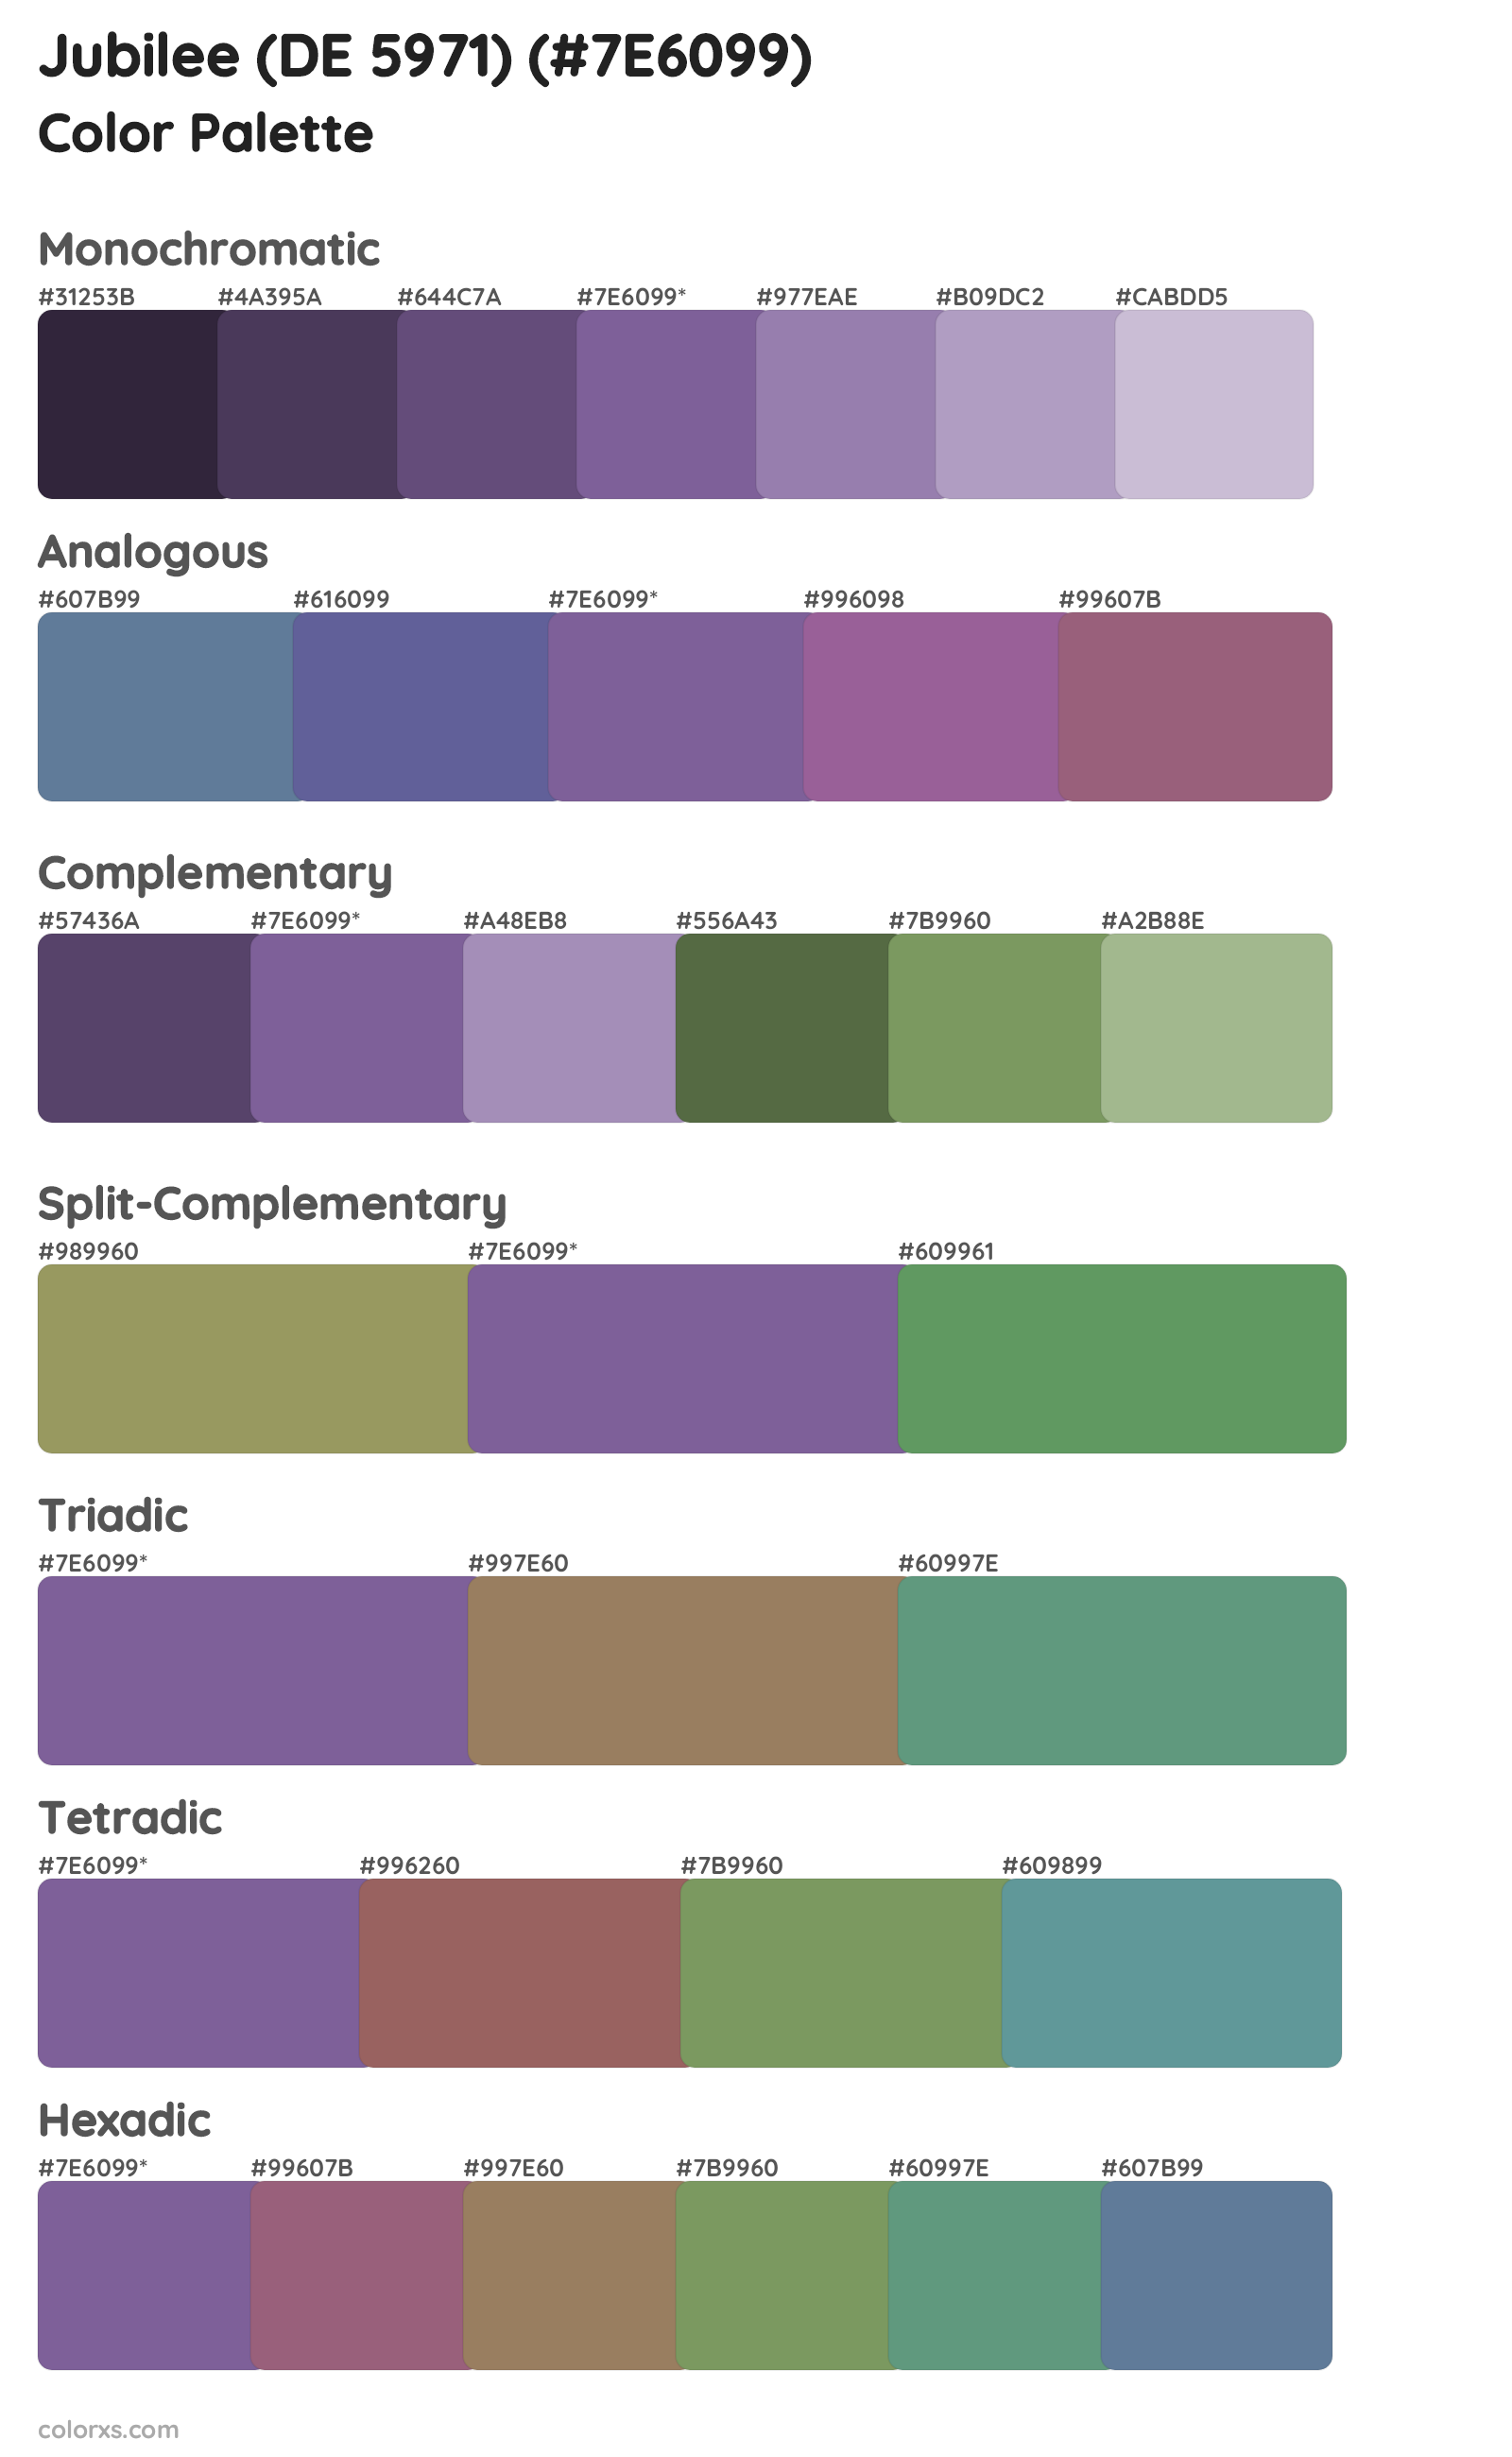 Jubilee (DE 5971) Color Scheme Palettes